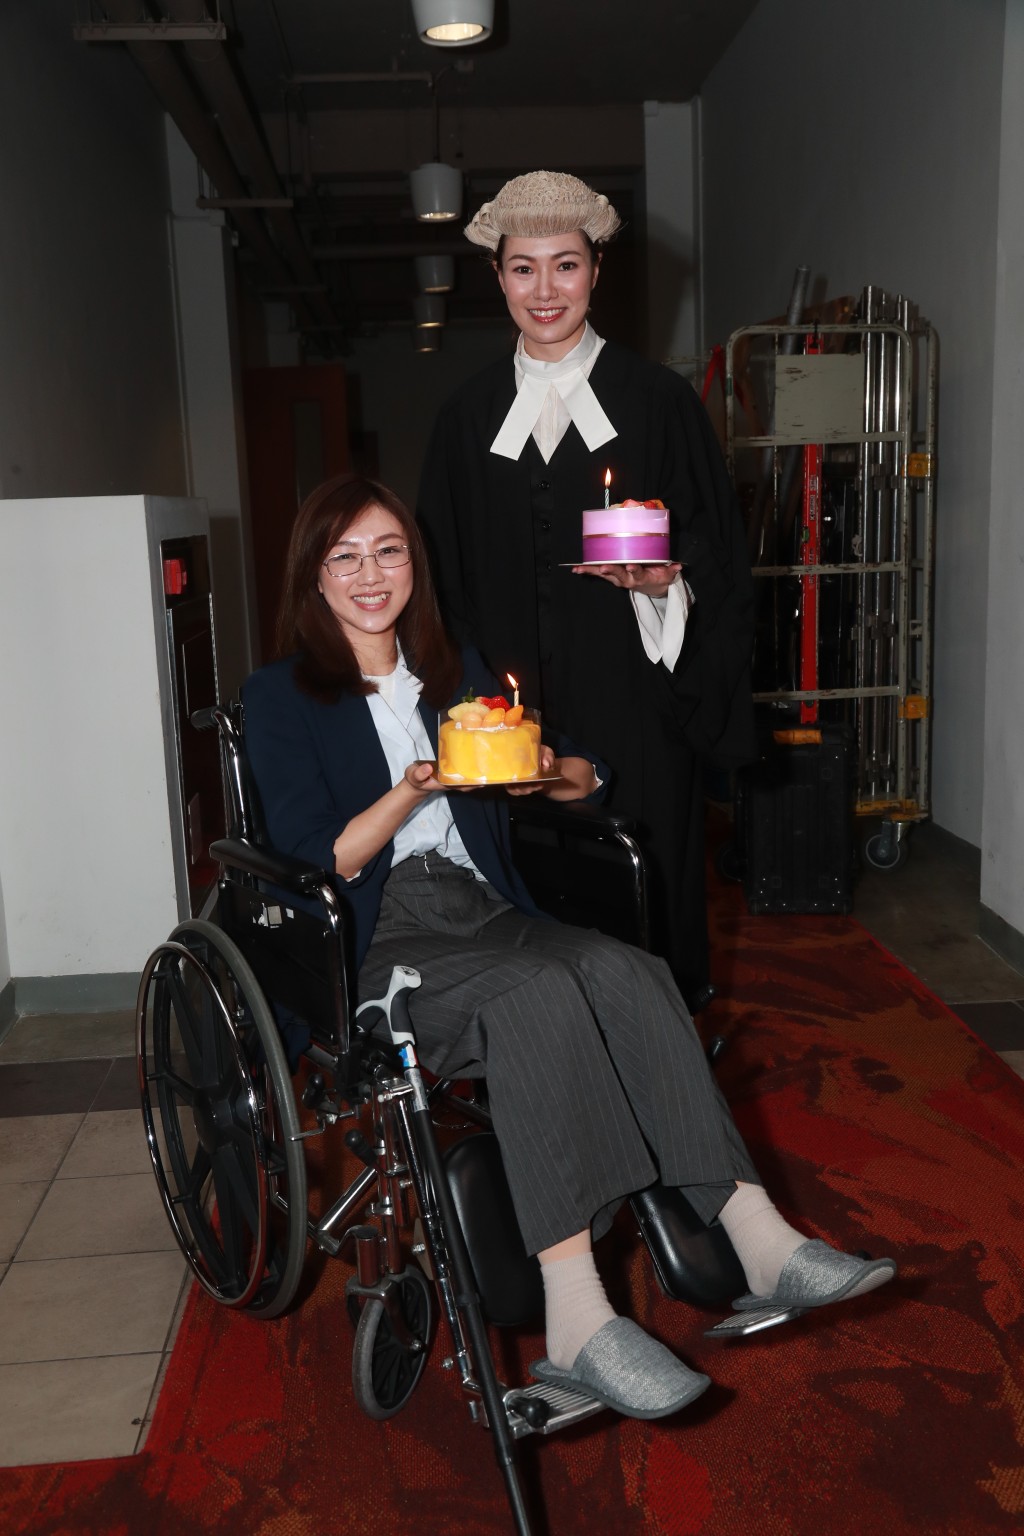 27日生日的颜卓灵与今日（31日）生日的菁玮就获剧组送上生日蛋糕庆祝。